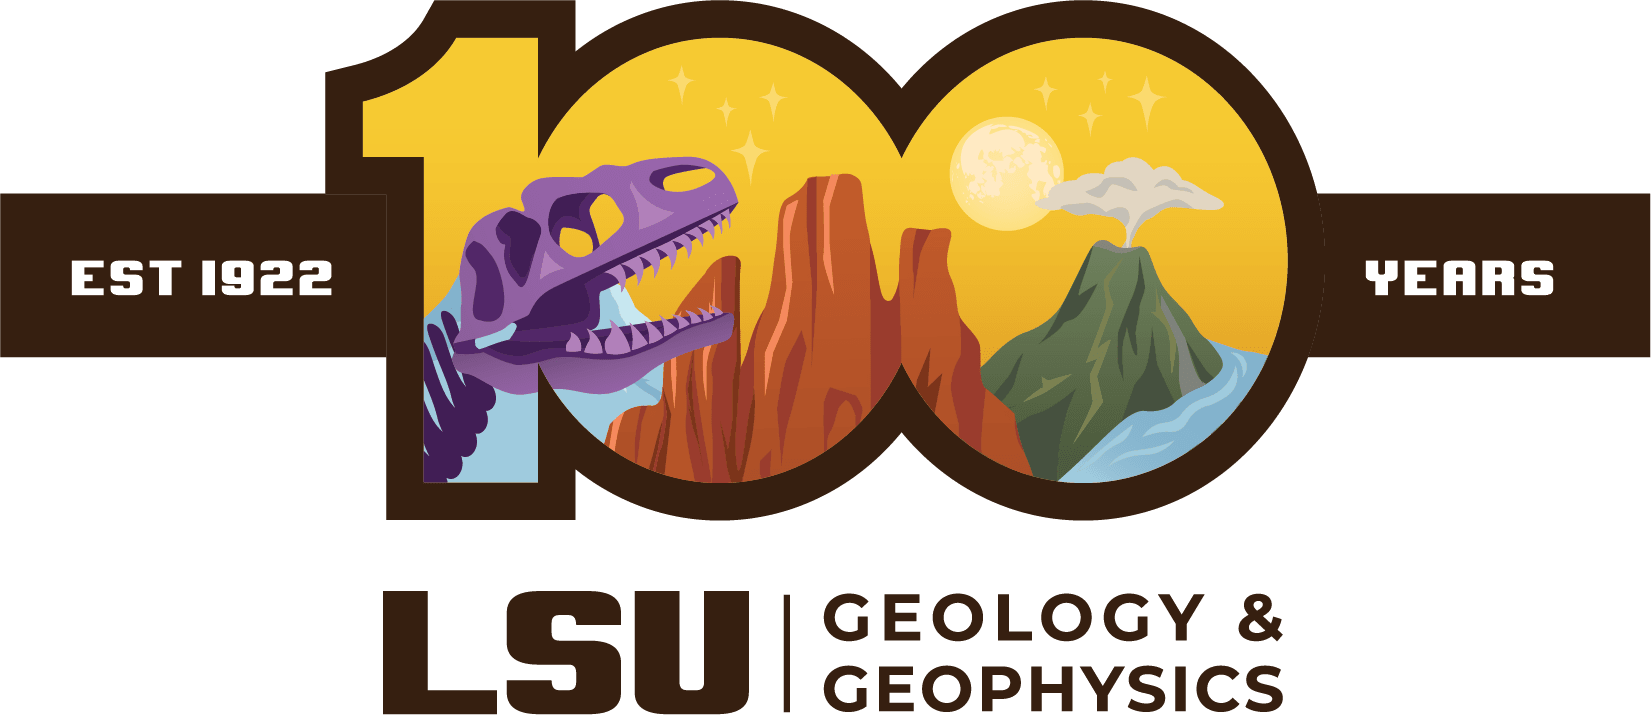 Day geology stock vector. Illustration of split, logo - 39649956